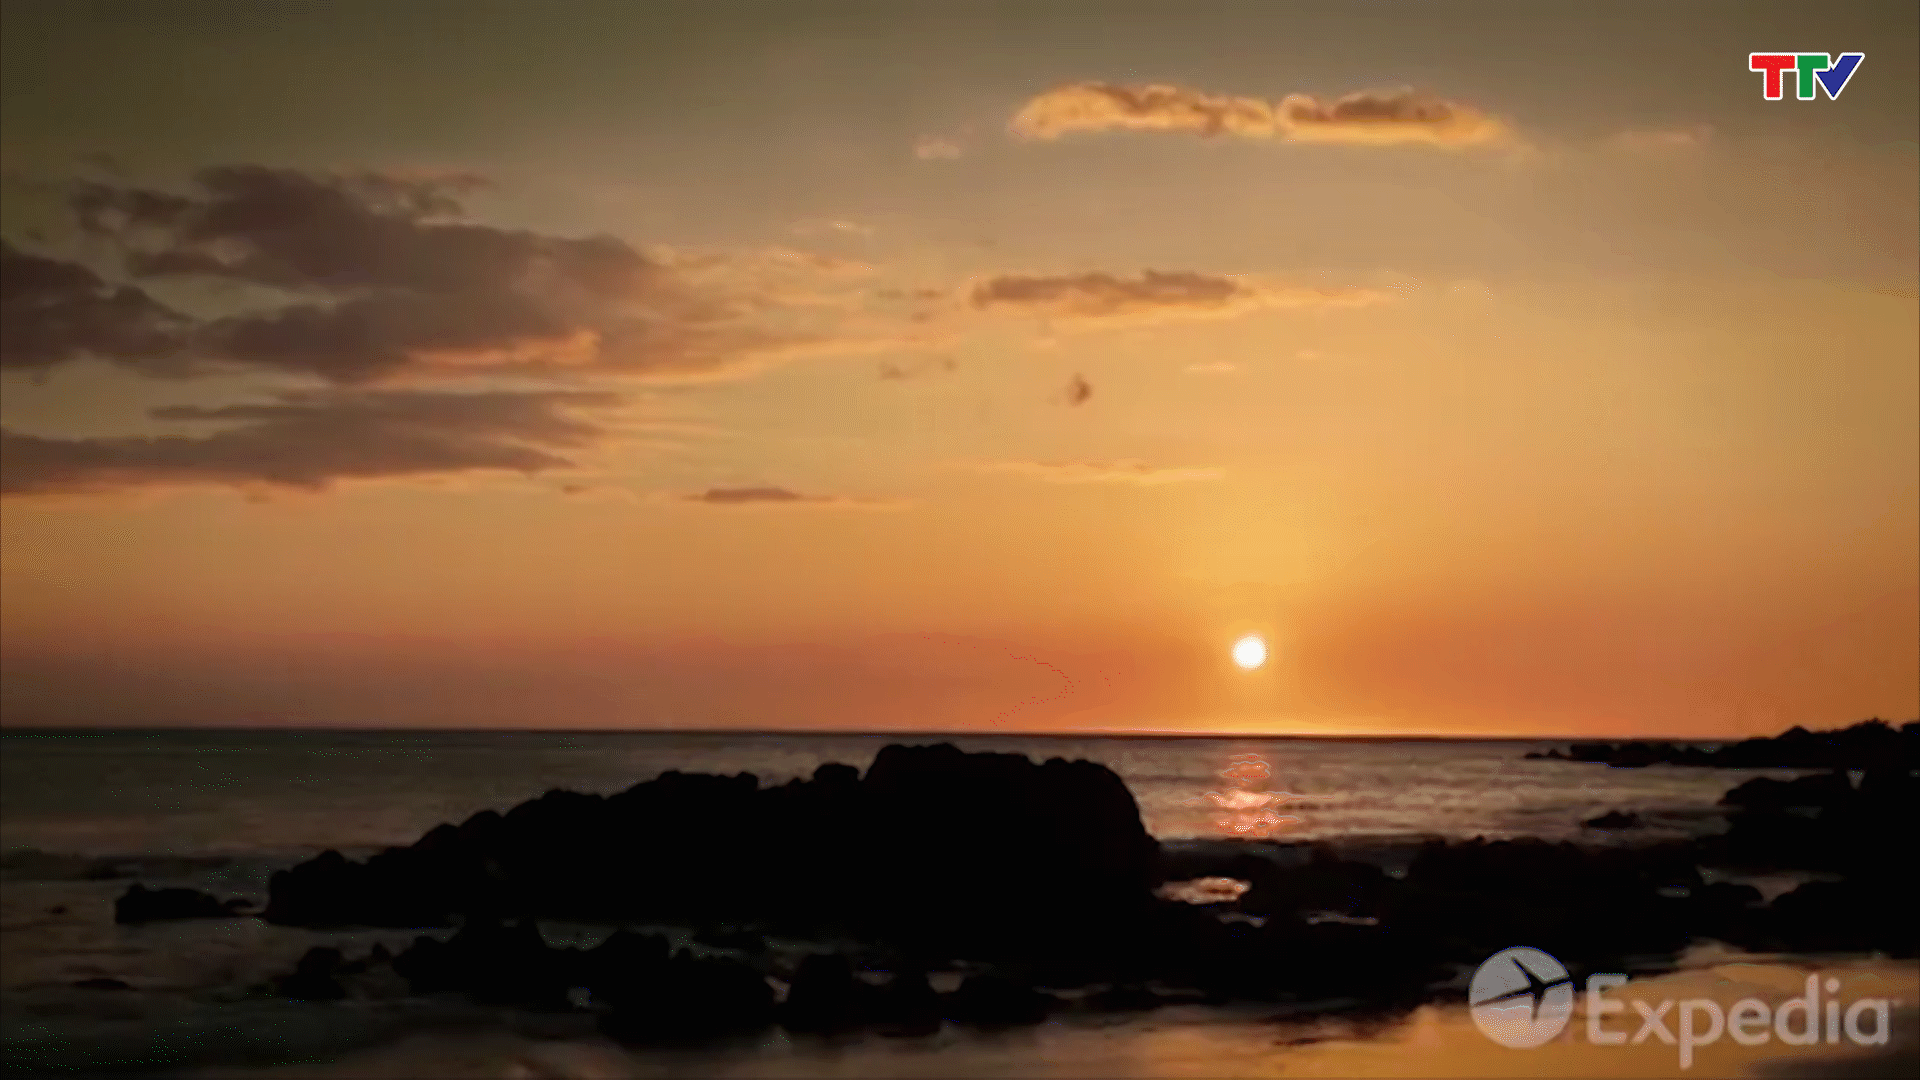 mặt trời lặn ở phía Bắc Thái Bình Dương trông giống như quả bóng lửa đang ngự trị trên bãi biển